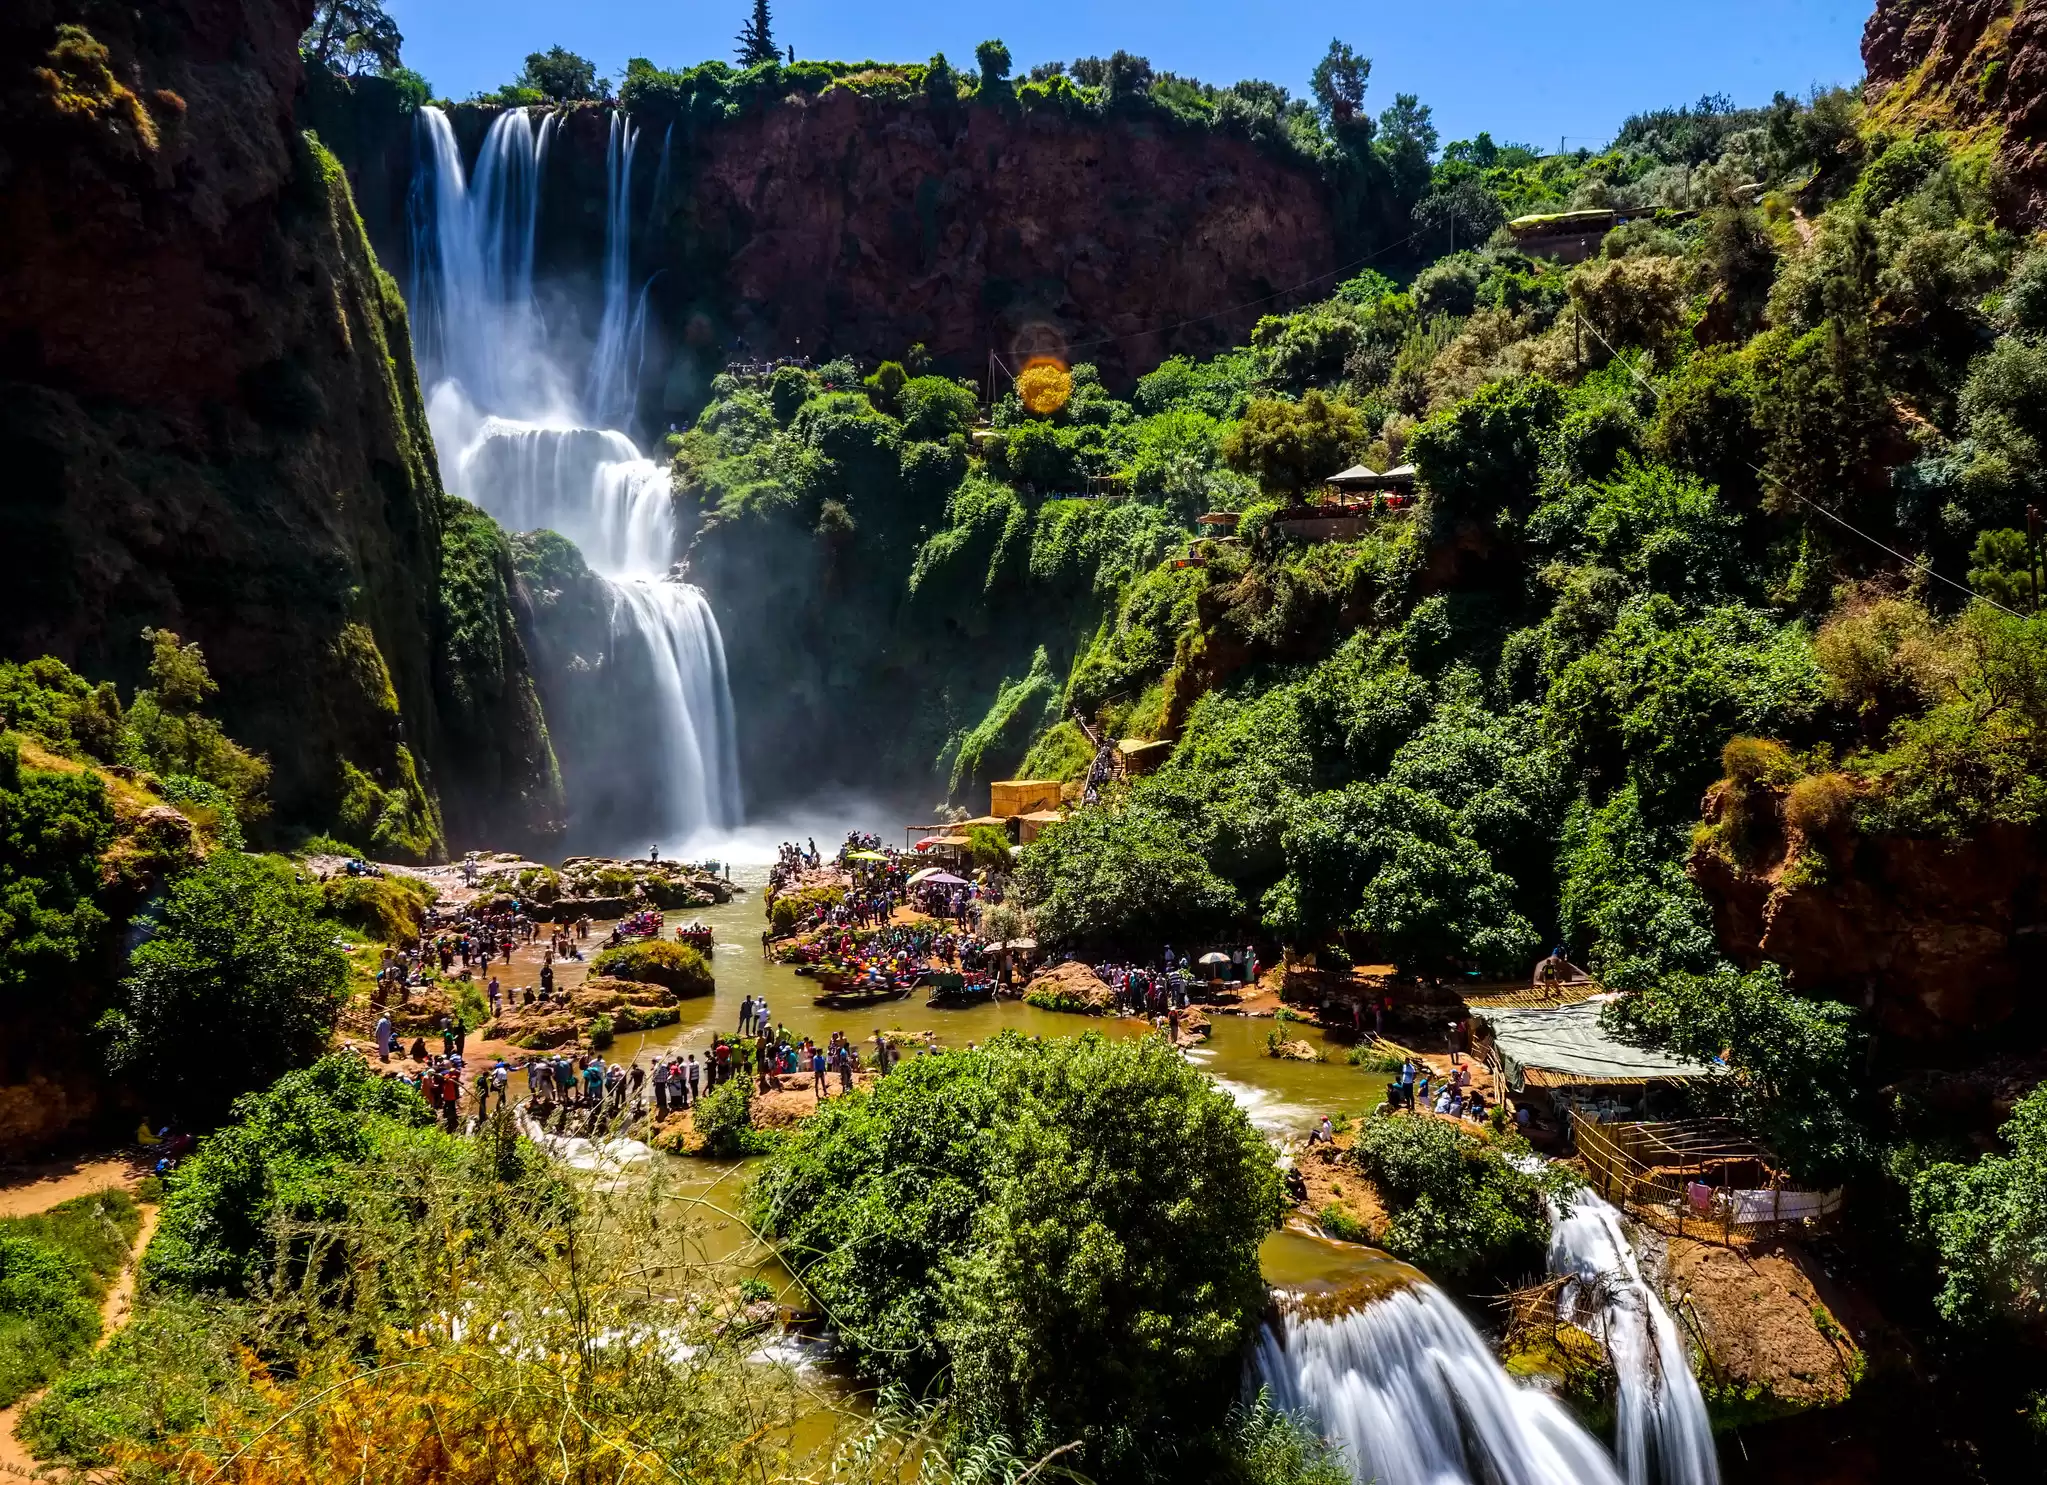 Marrakech Excursion to Ouzoud Waterfalls